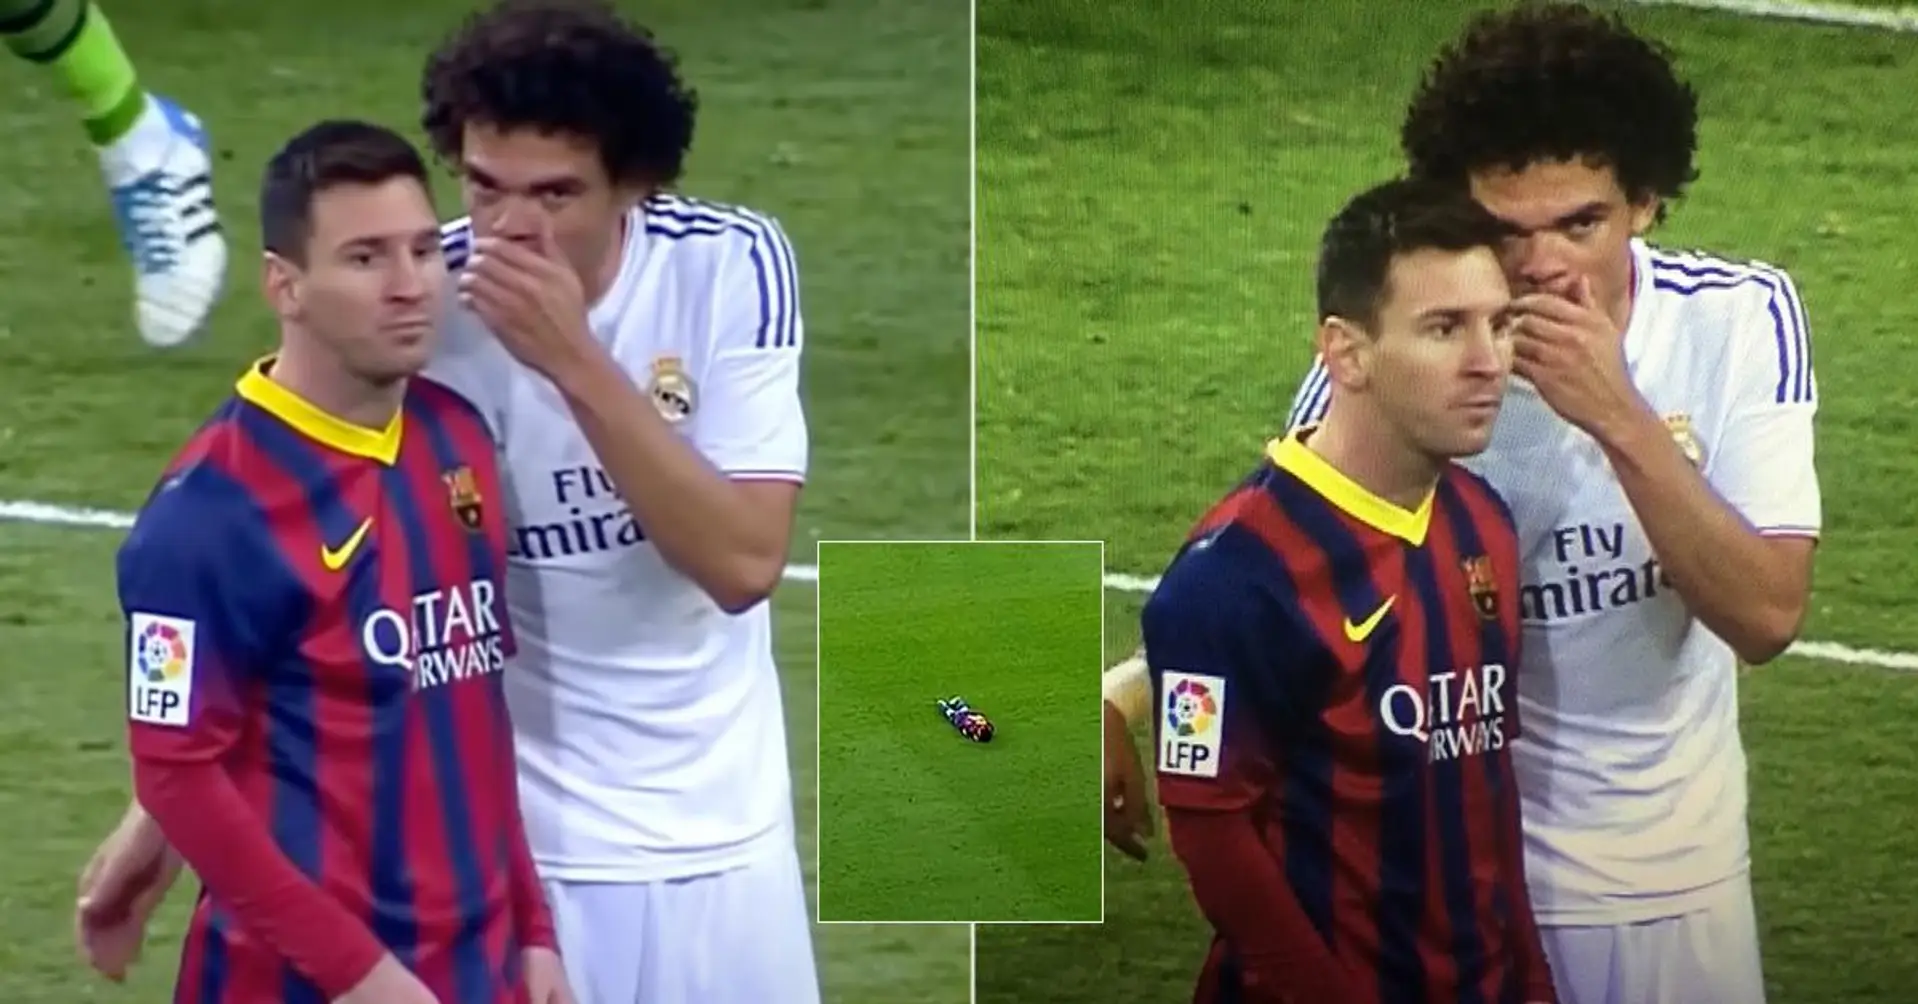 "Du machst dir immer in die Hose": Geschichte hinter dem "geheimen Dialog" von Messi mit Pepe vor den Kameras